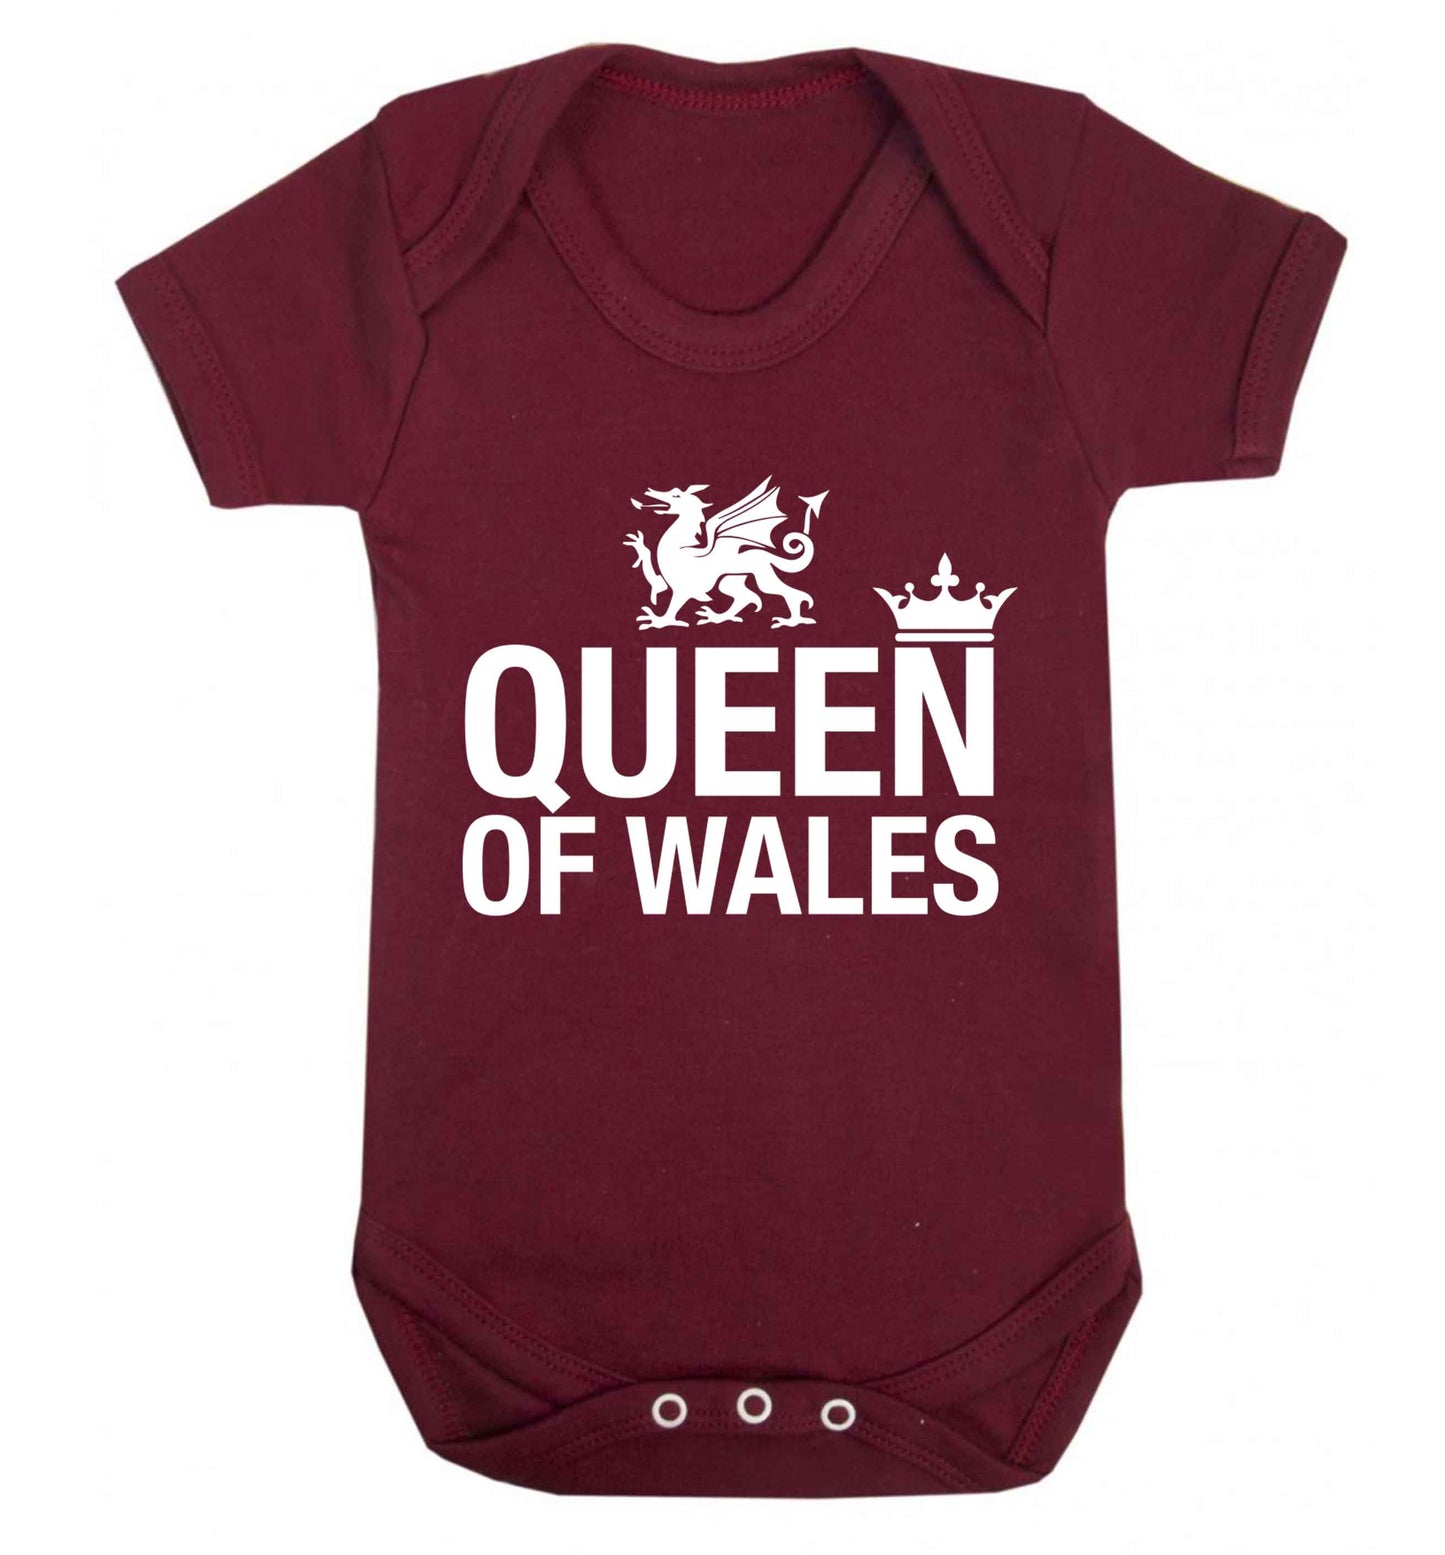 Queen of Wales Baby Vest maroon 18-24 months